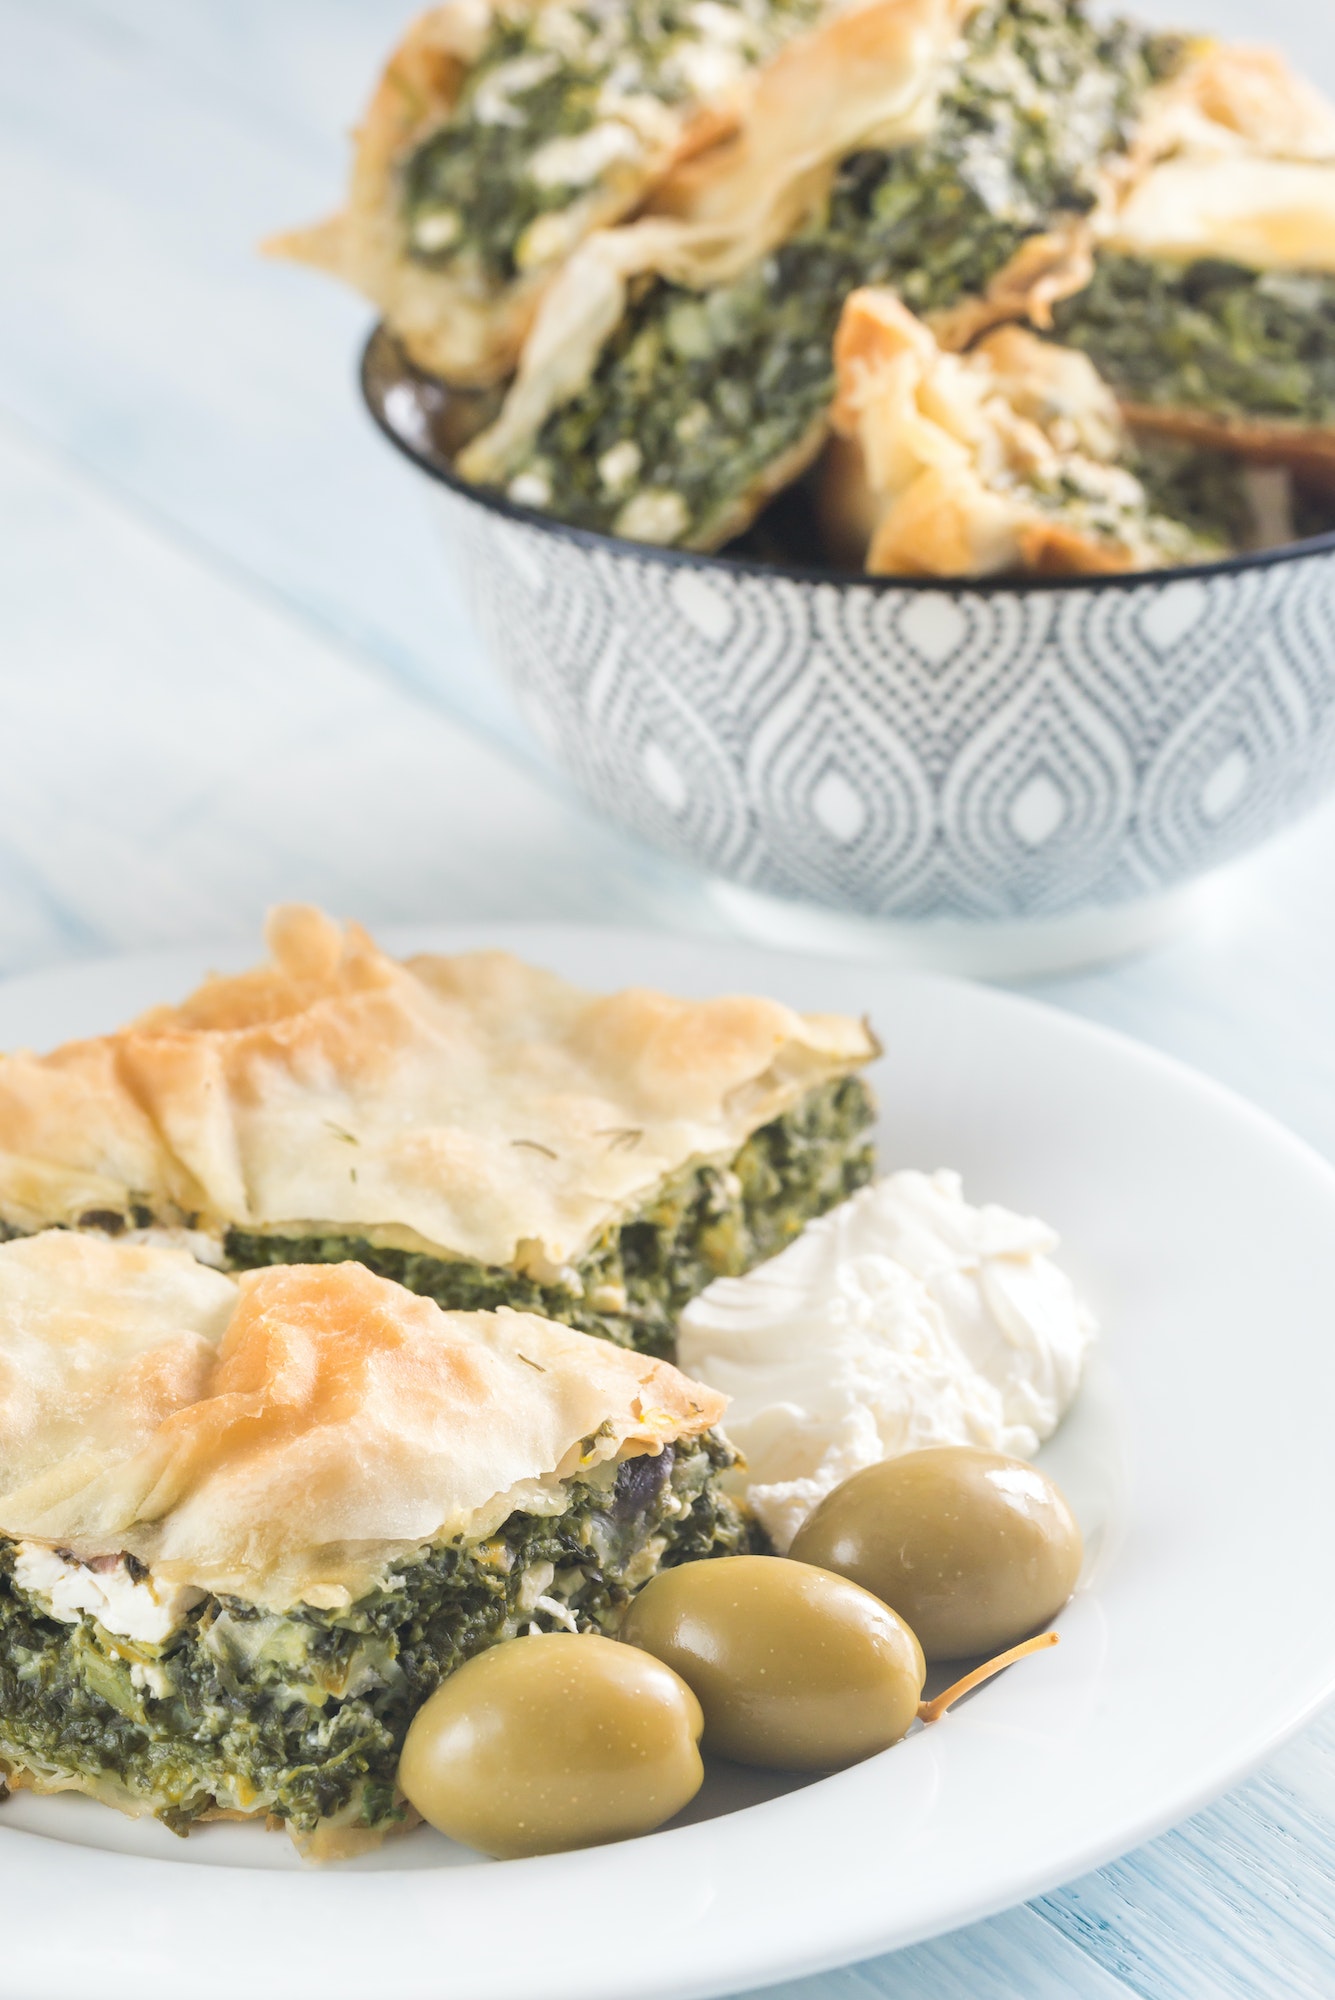 Spanakopita - Greek spinach pie